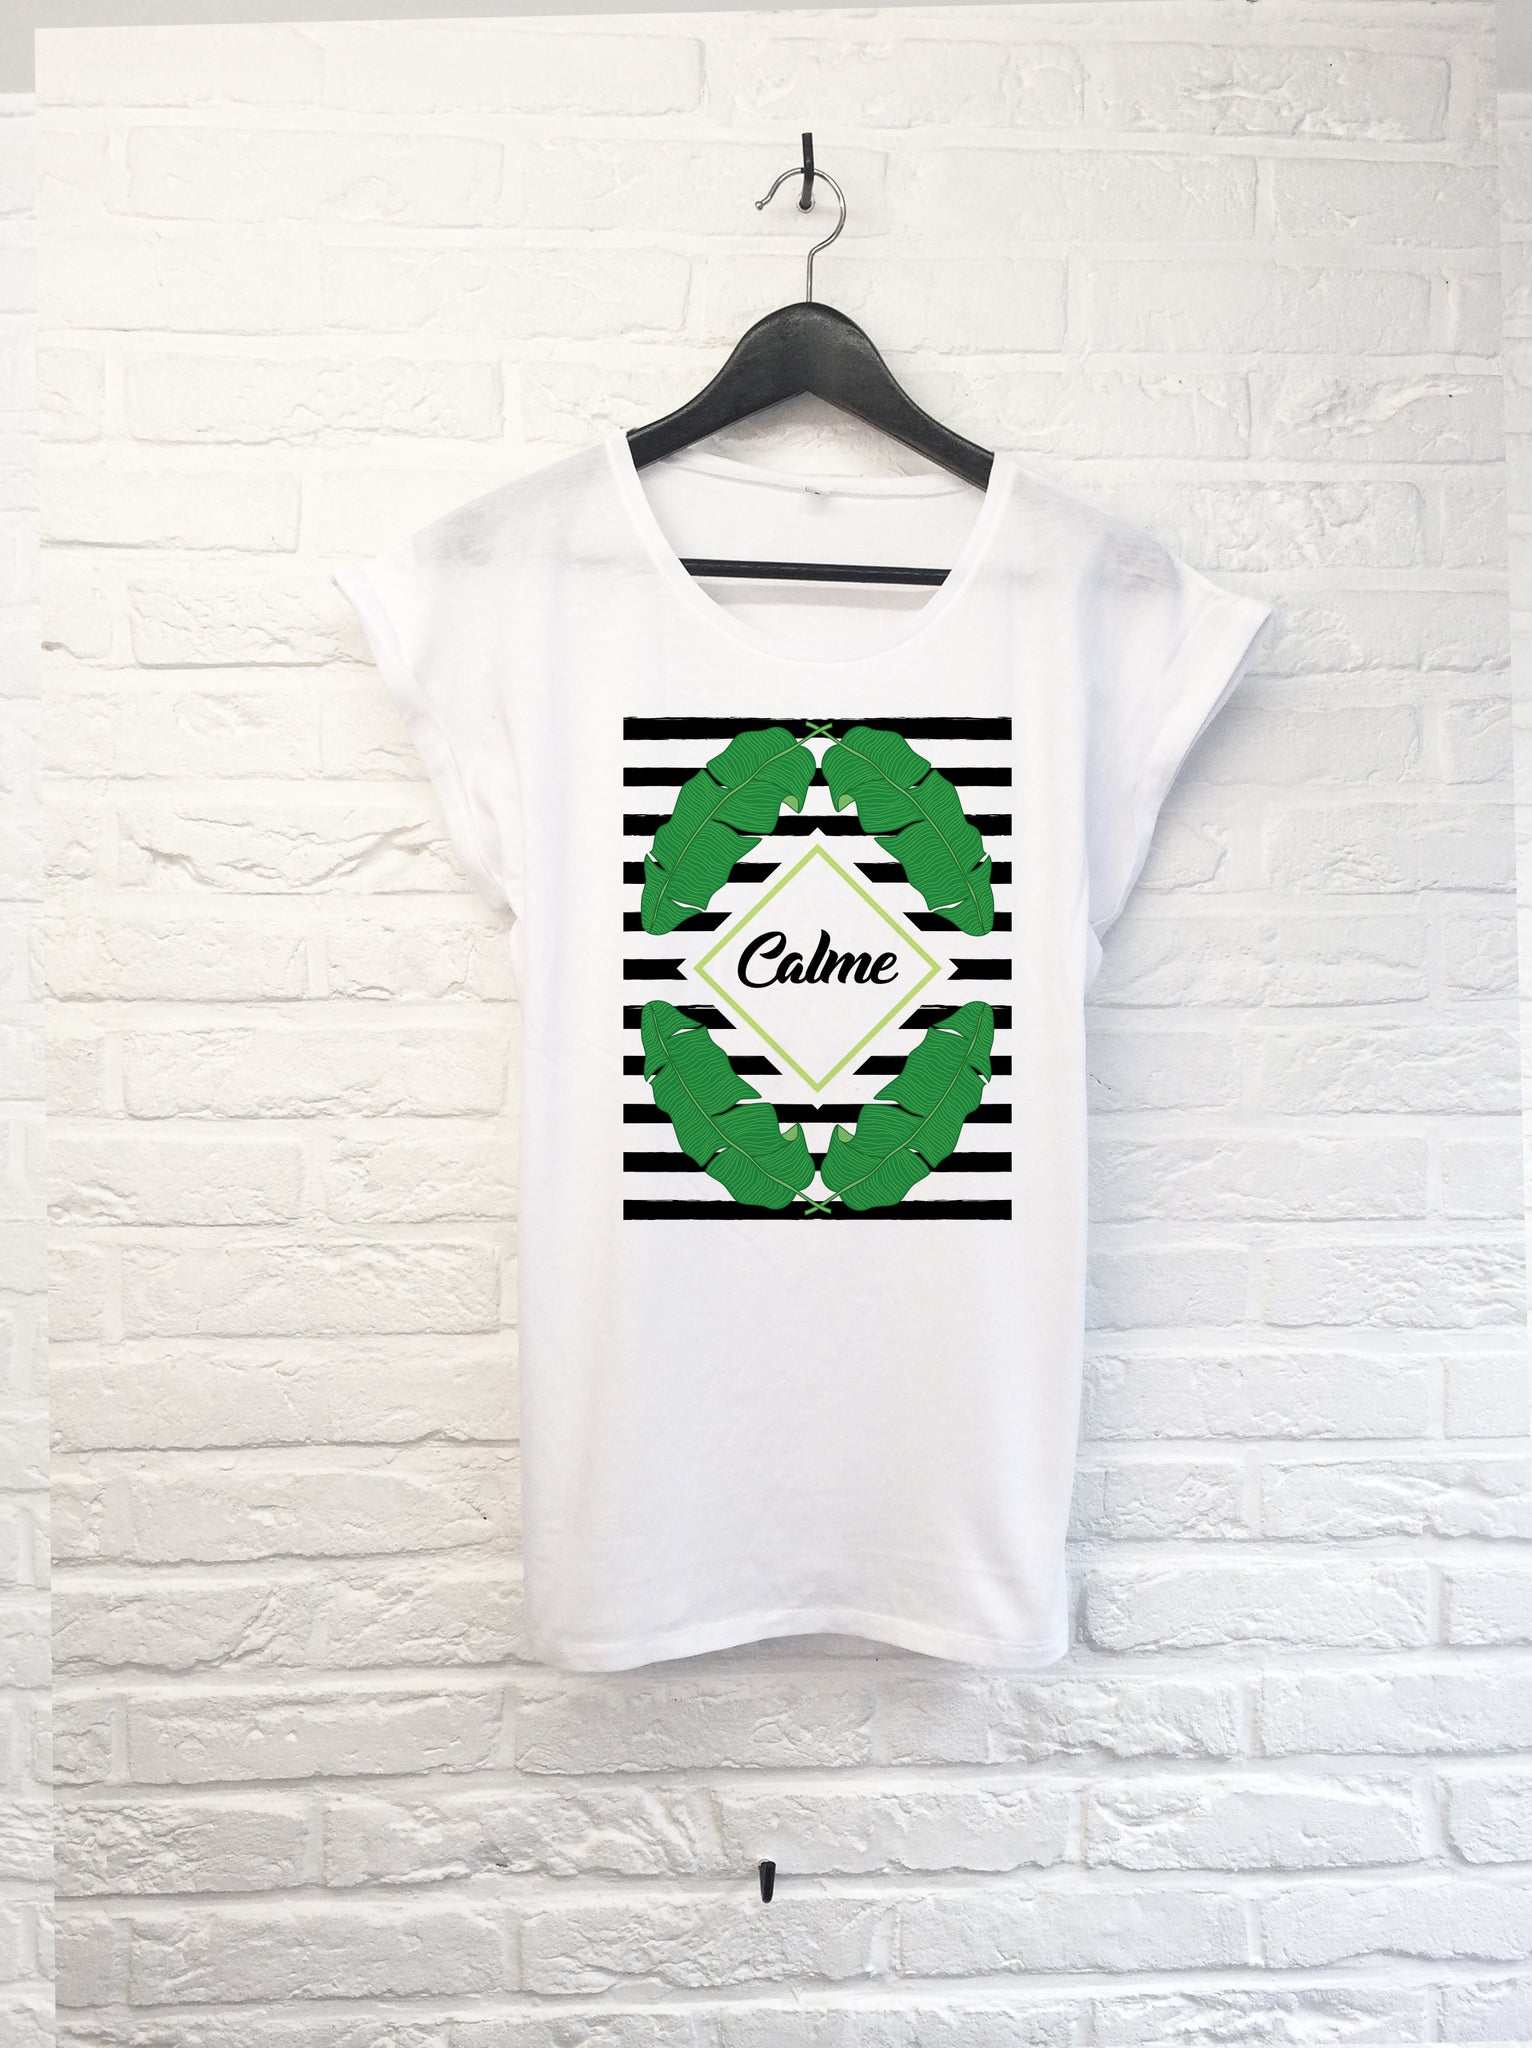 Calme - Femme-T shirt-Atelier Amelot